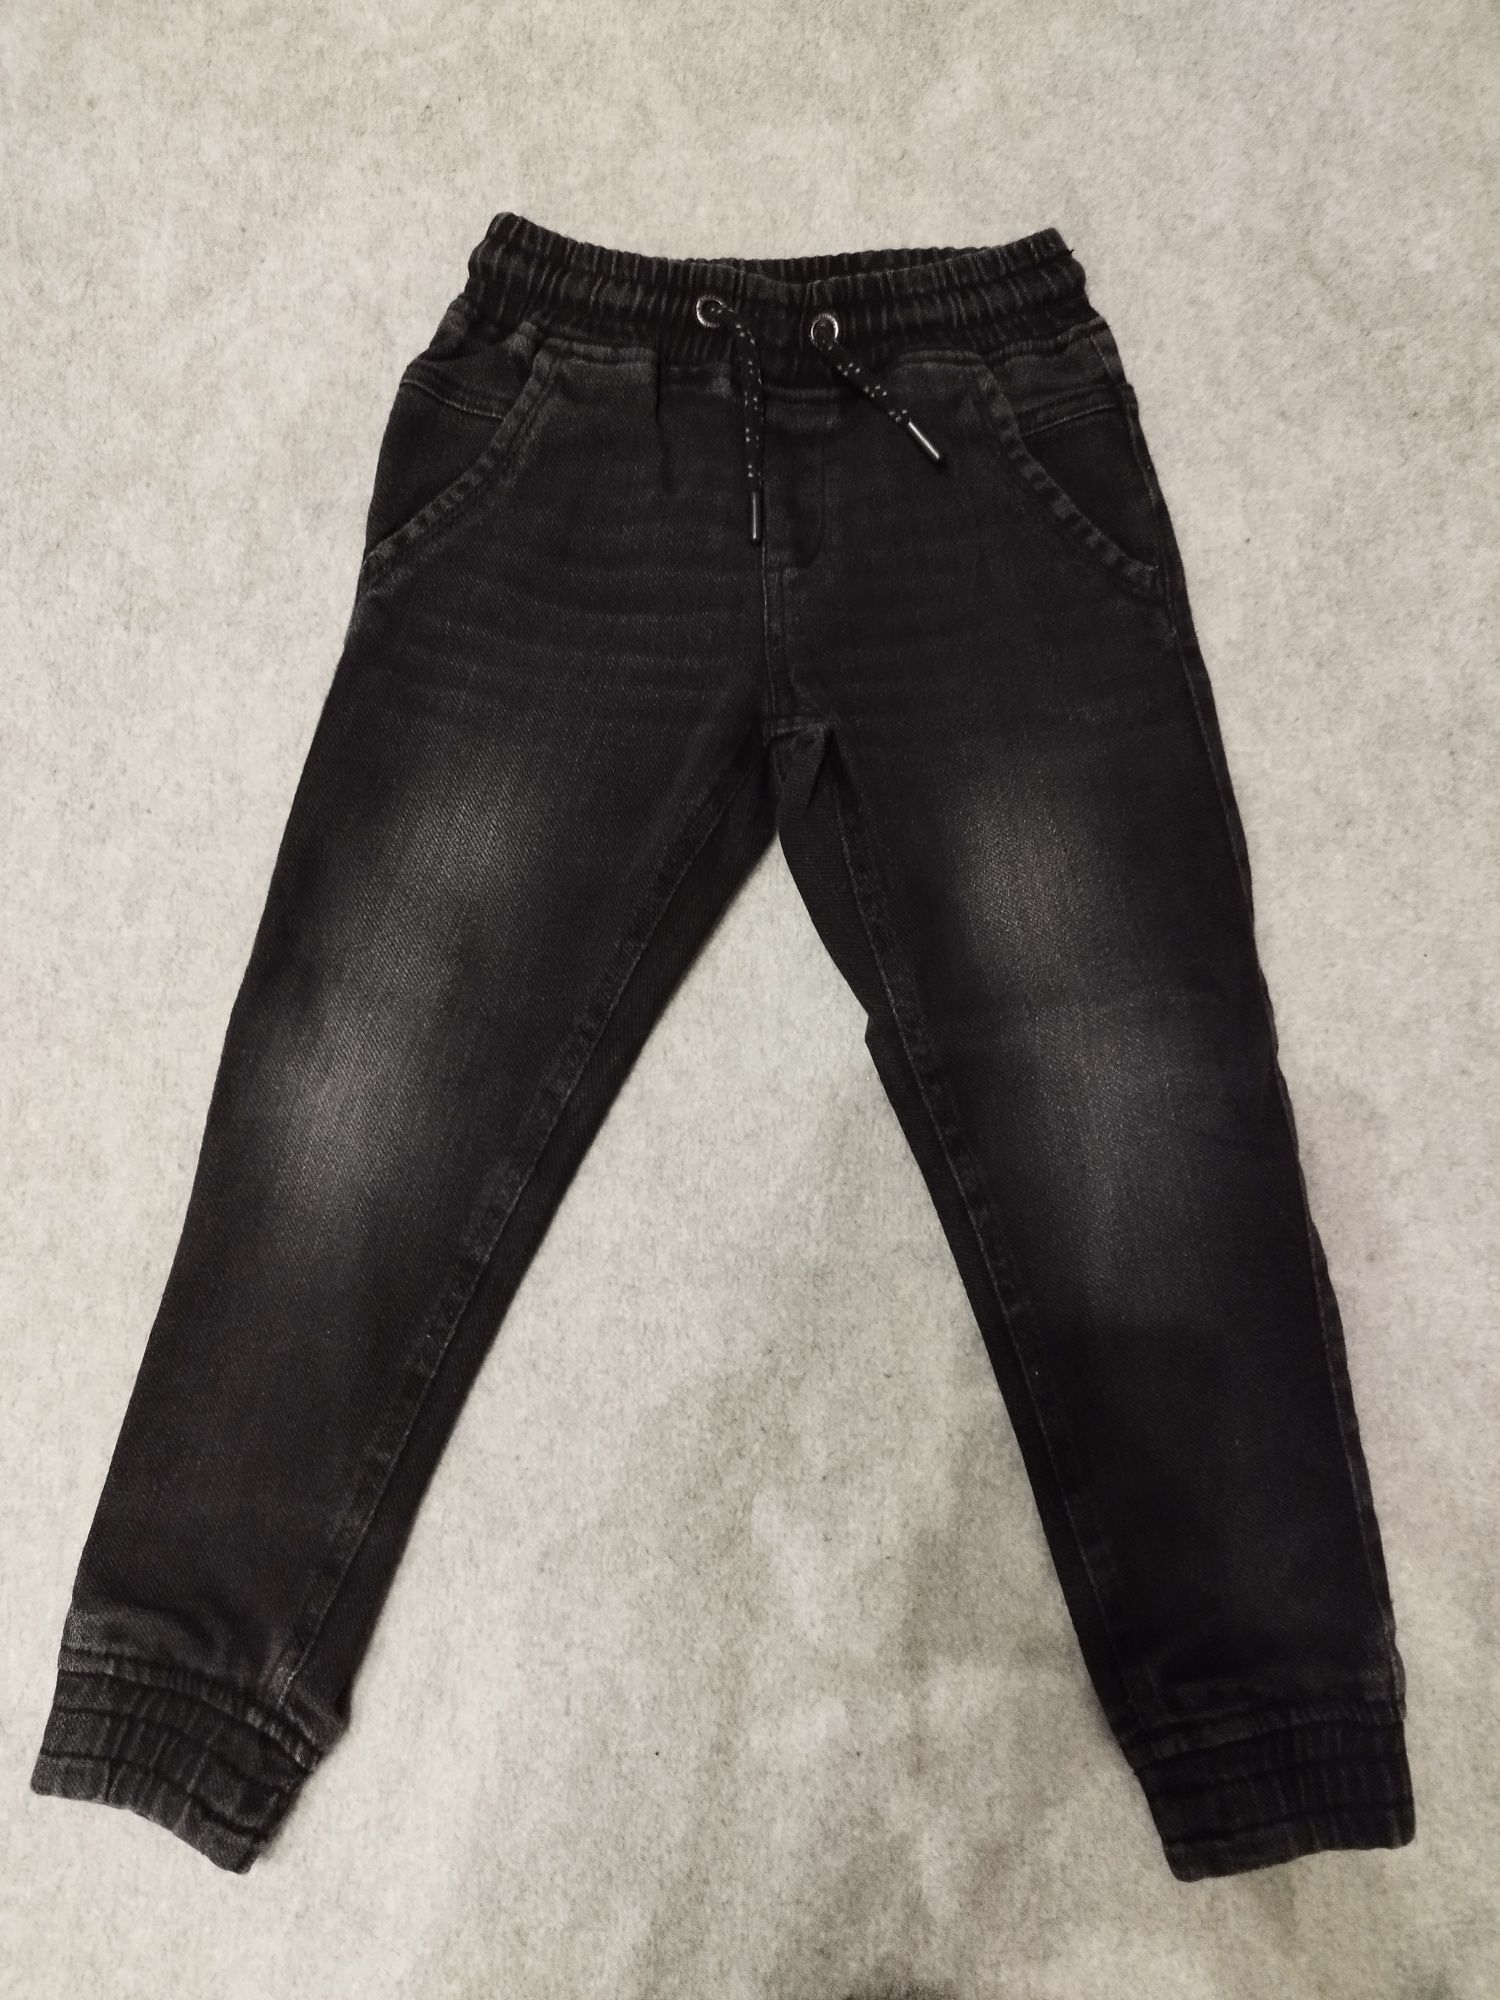 Czarne jeansy na gumce, r. 122